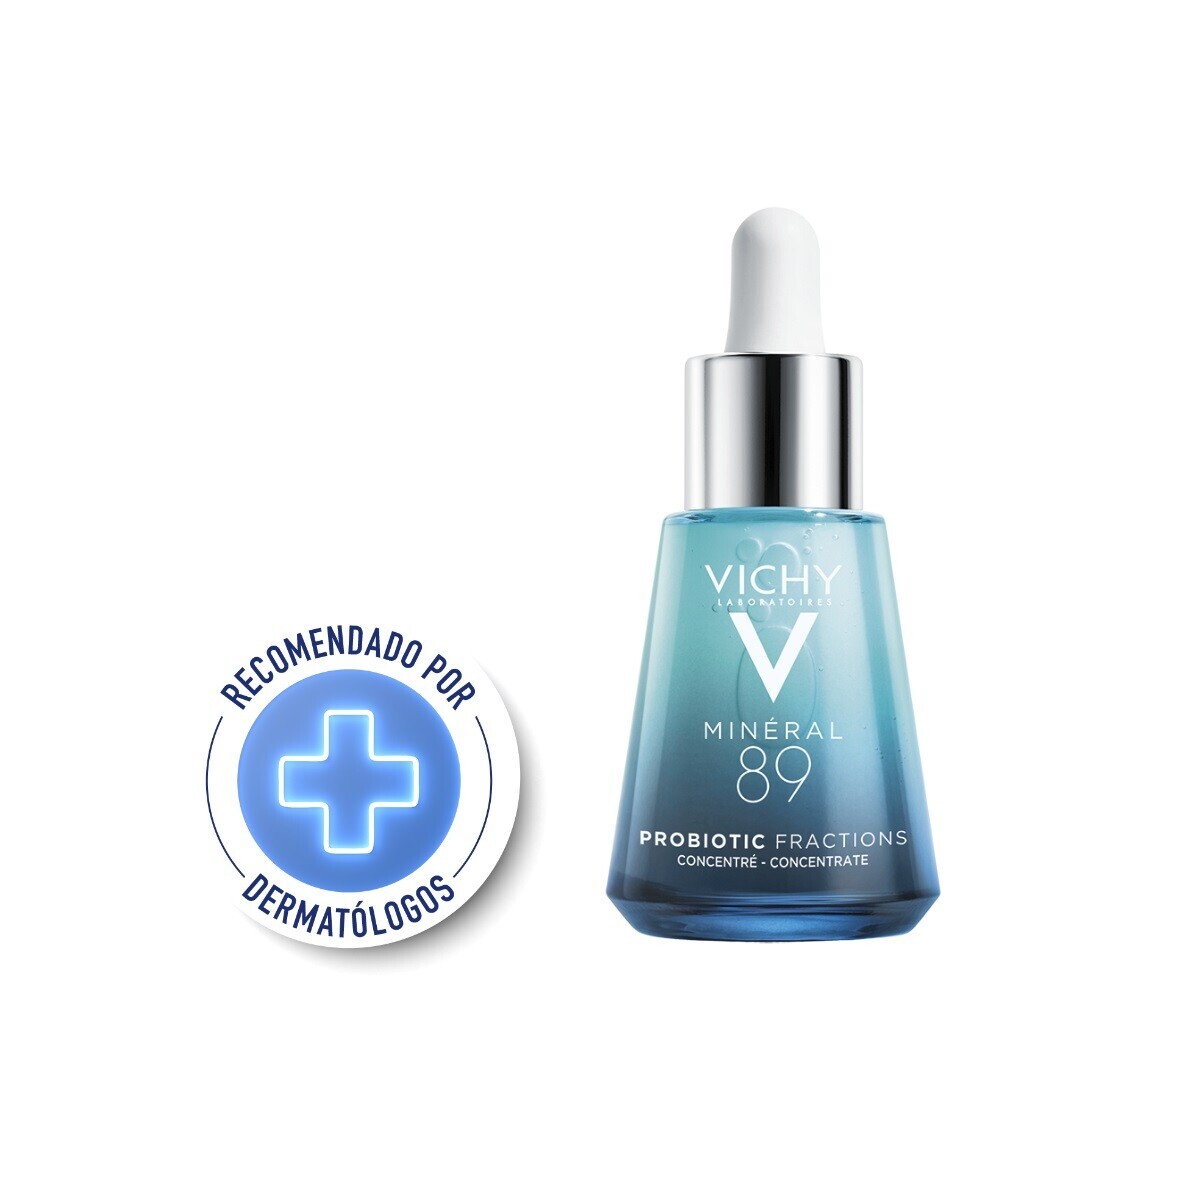 Vichy Mineral 89 Probiotic 